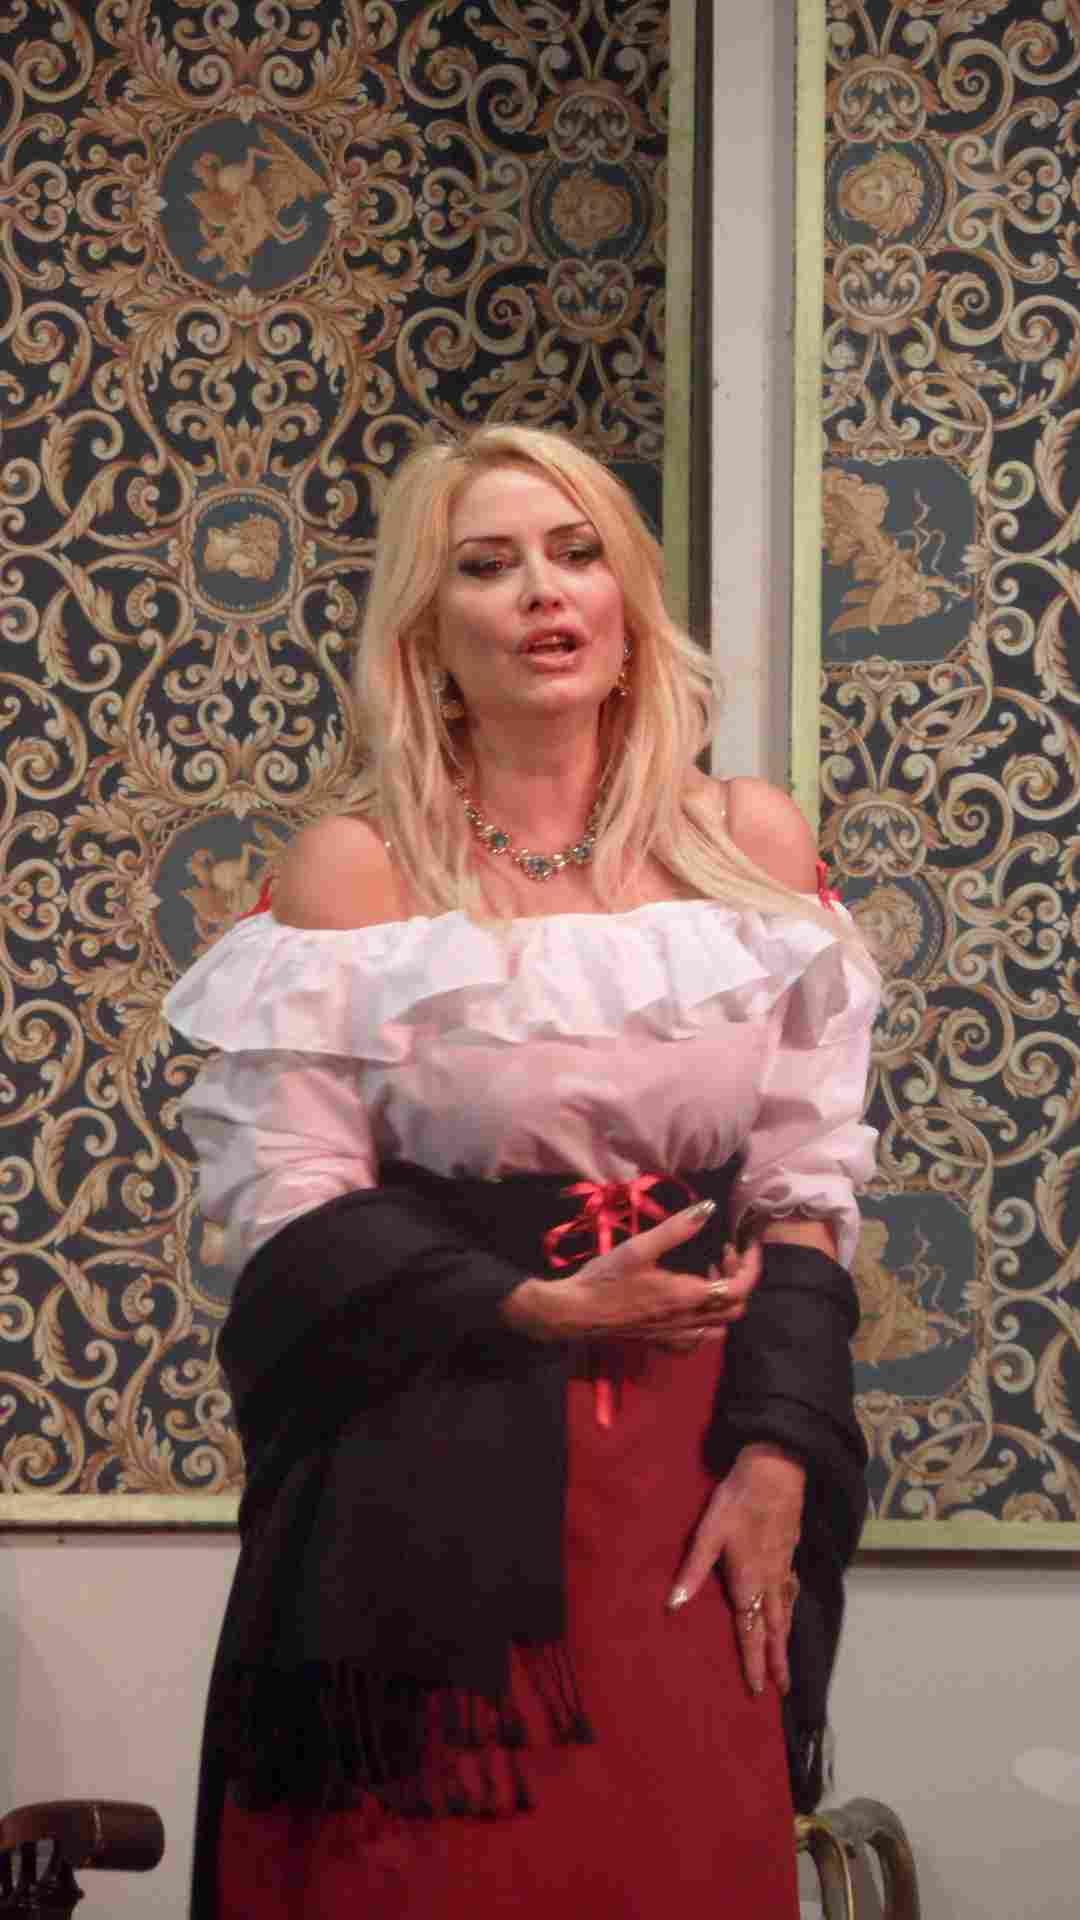 Teatro Fellini di Catania: il soprano Cosetta Gigli rivisita il ruolo della donna nello spettacolo “Nessun…a dorma”